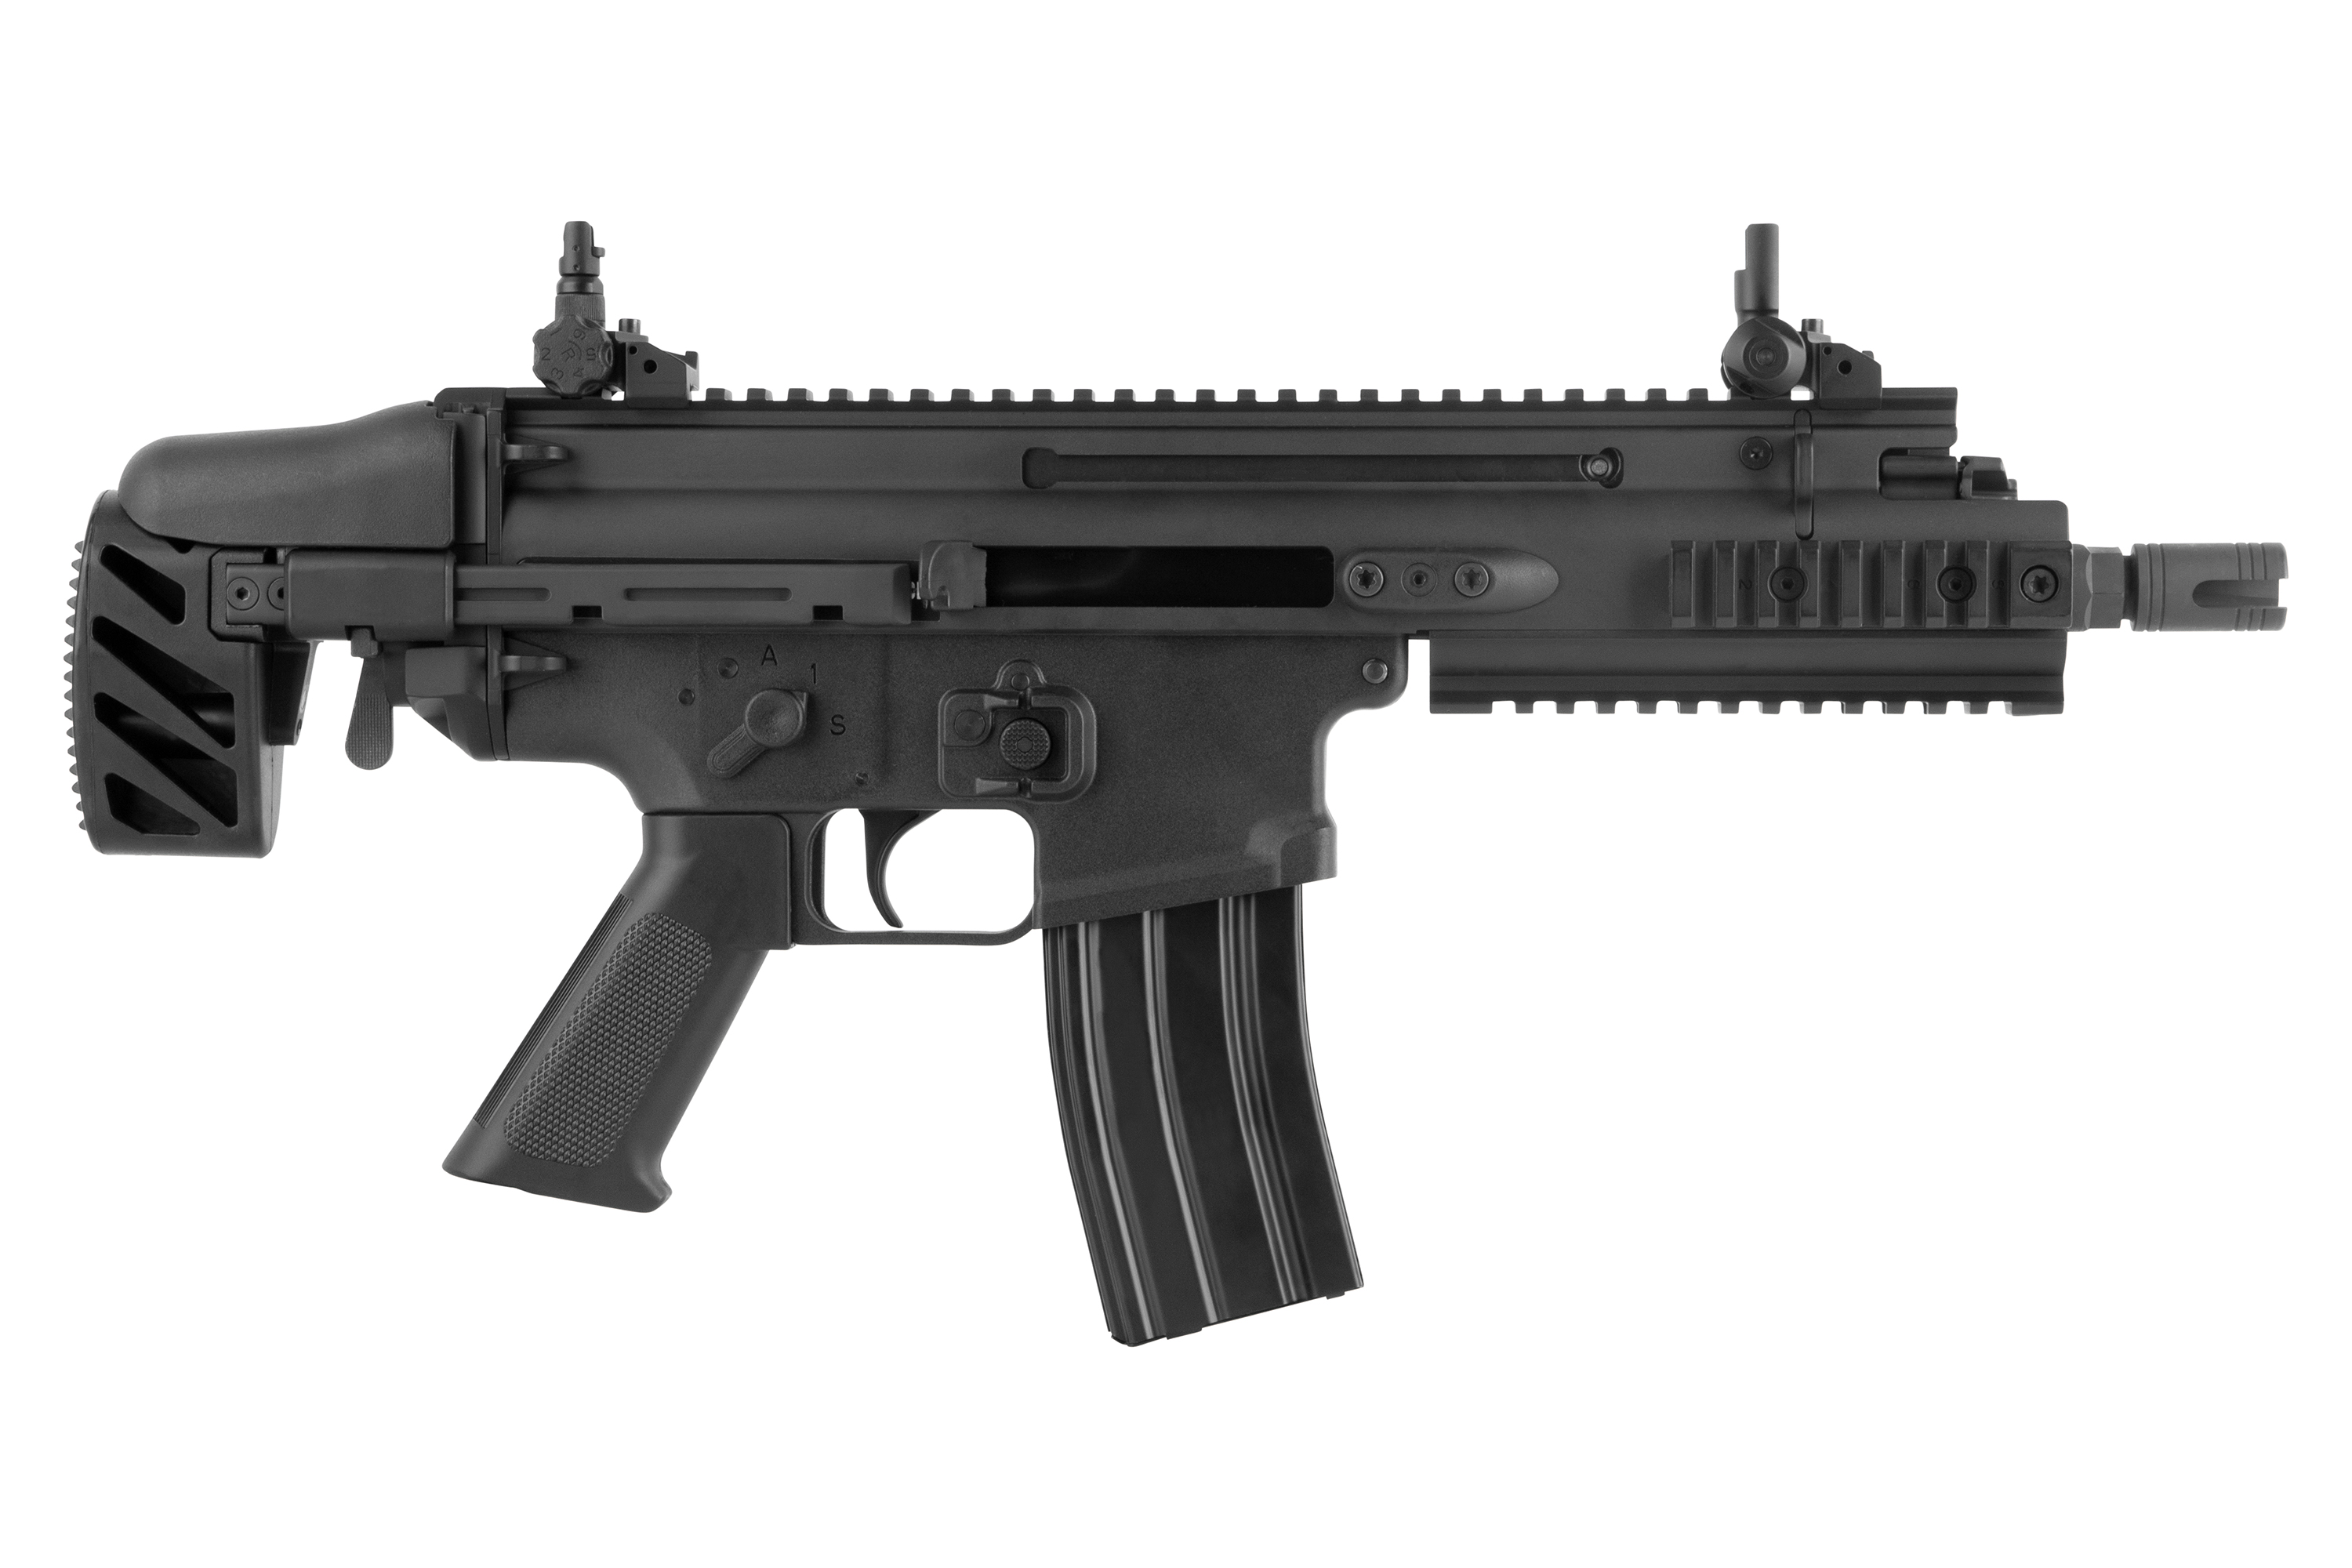 FN Herstal Scar SC BRSS schwarz 6mm - Airsoft S-AEG